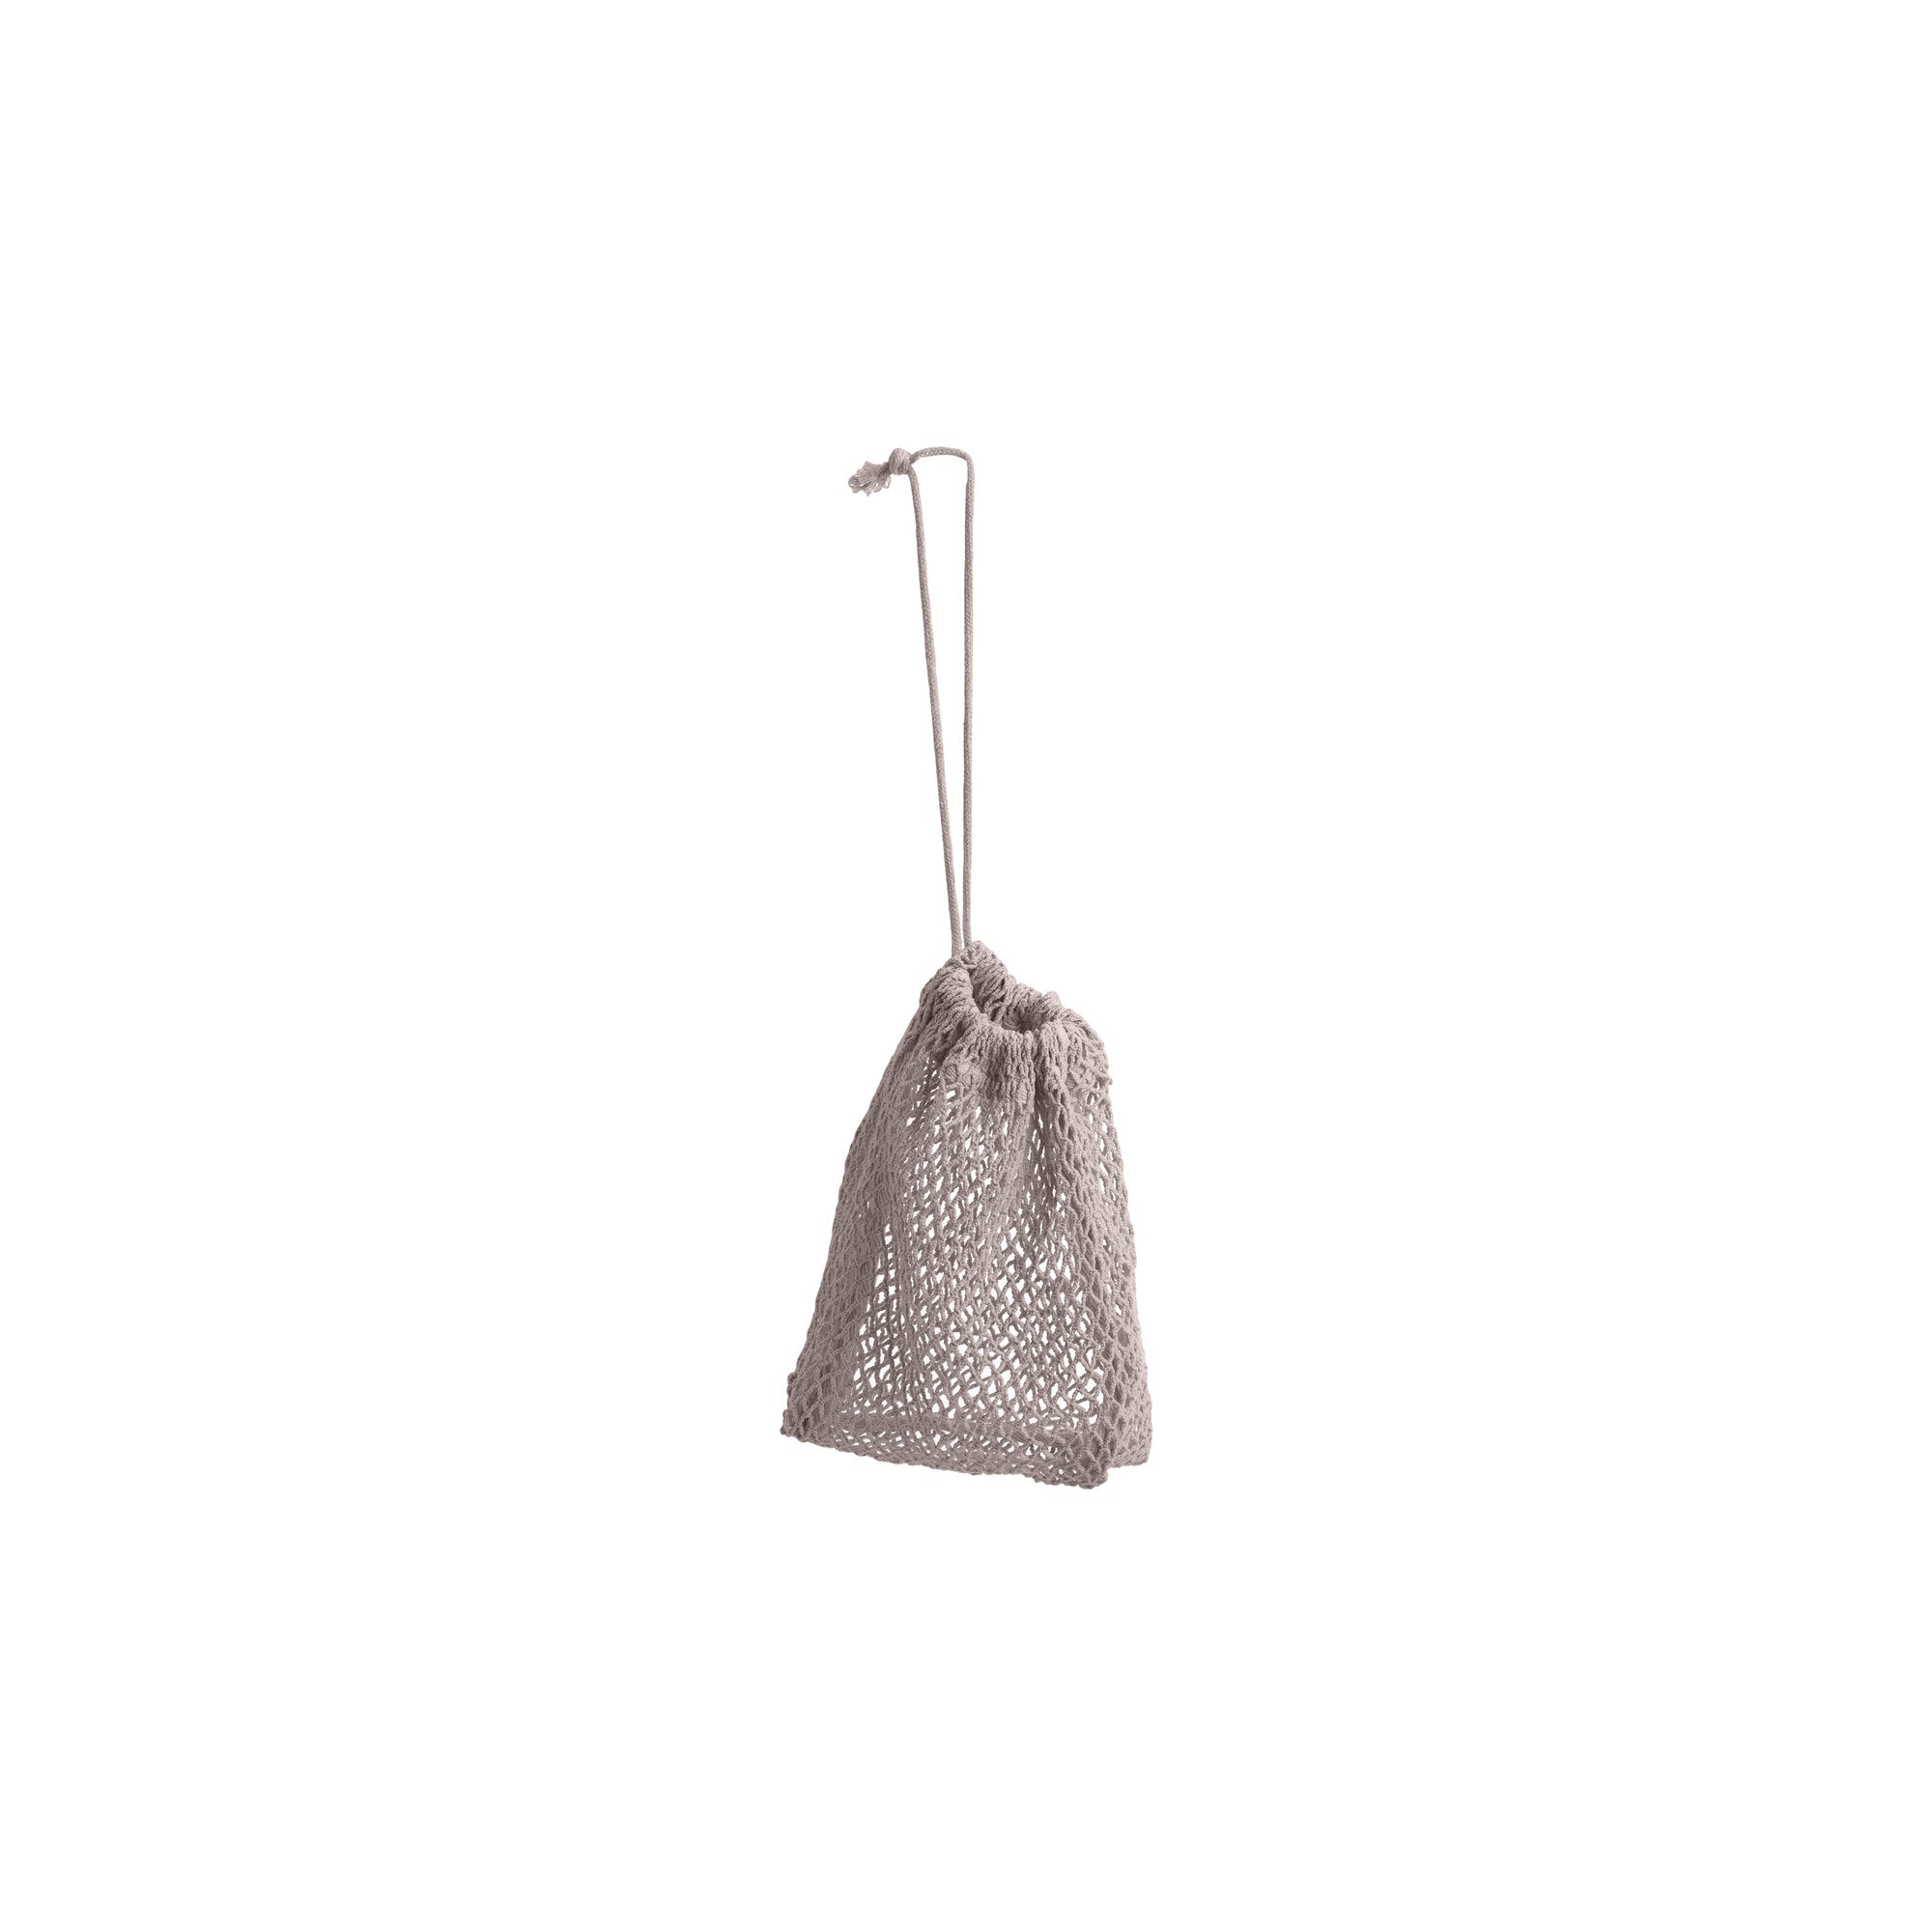 La bolsa de la compañía orgánica Bag Net Lavender pequeña y polvorienta